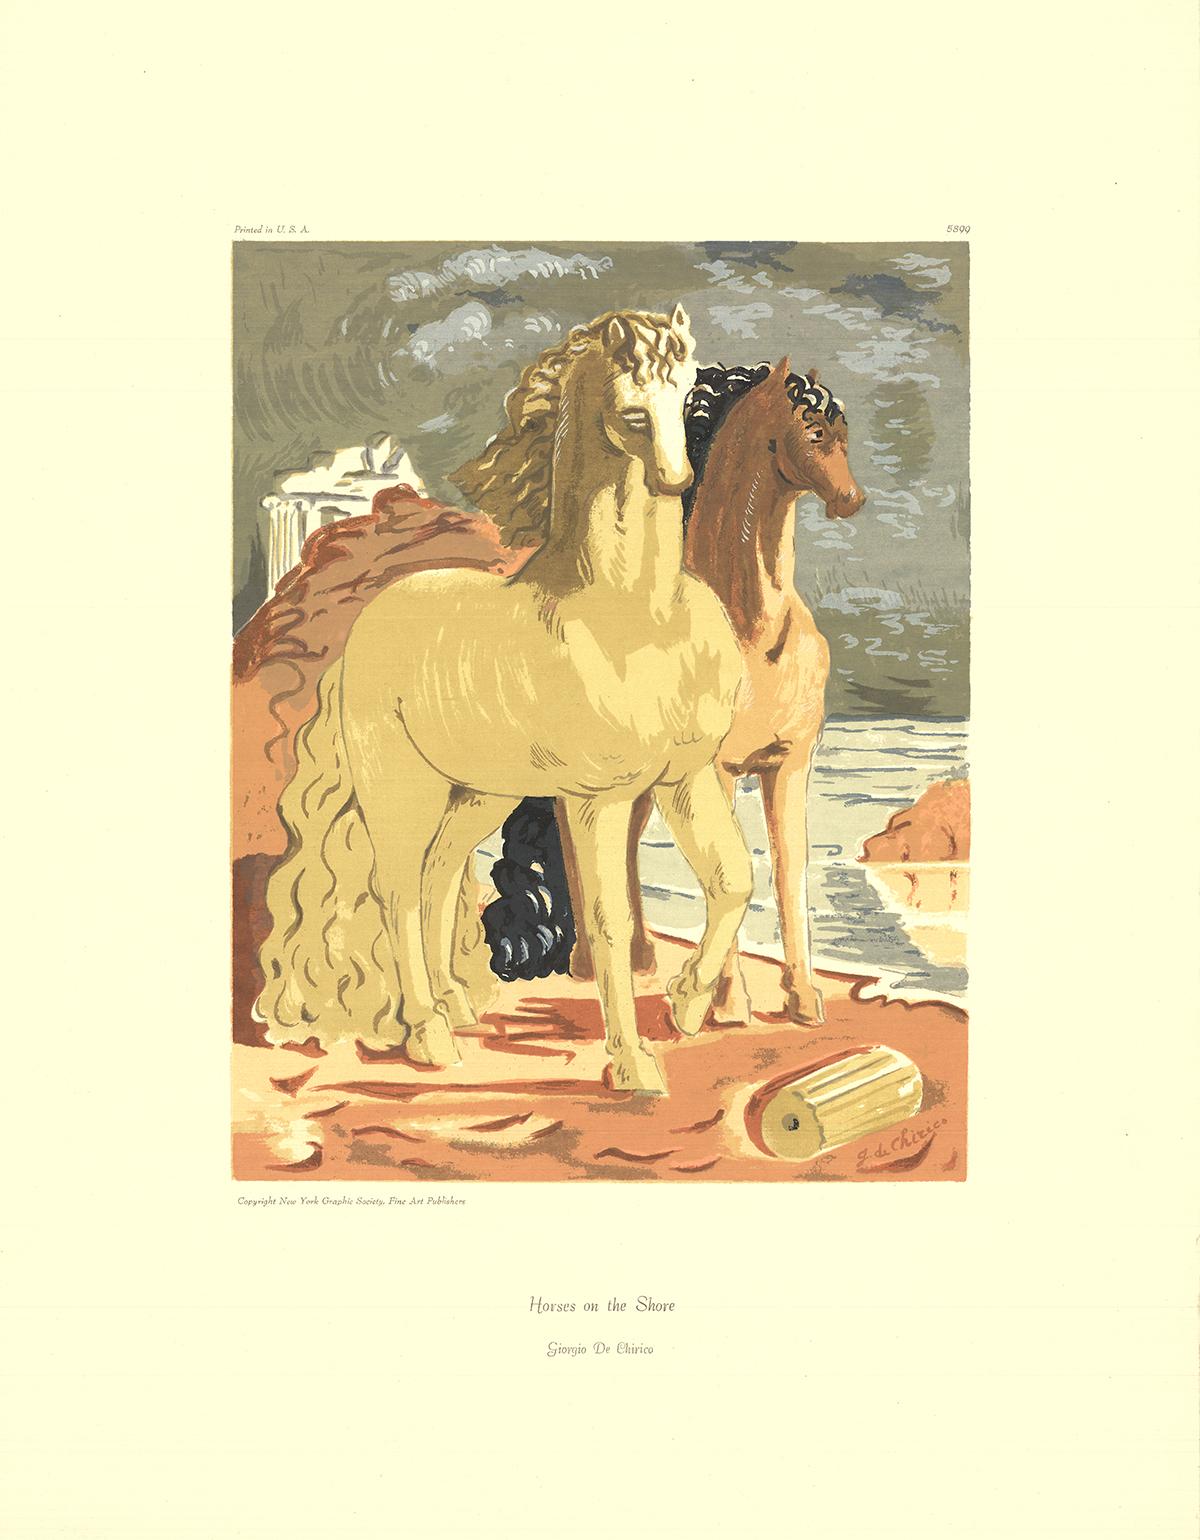 Giorgio de Chirico-Horses on the Shore-26" x 20"-Serigraph-Surrealism-Brown - Print by Giorgio De Chirico